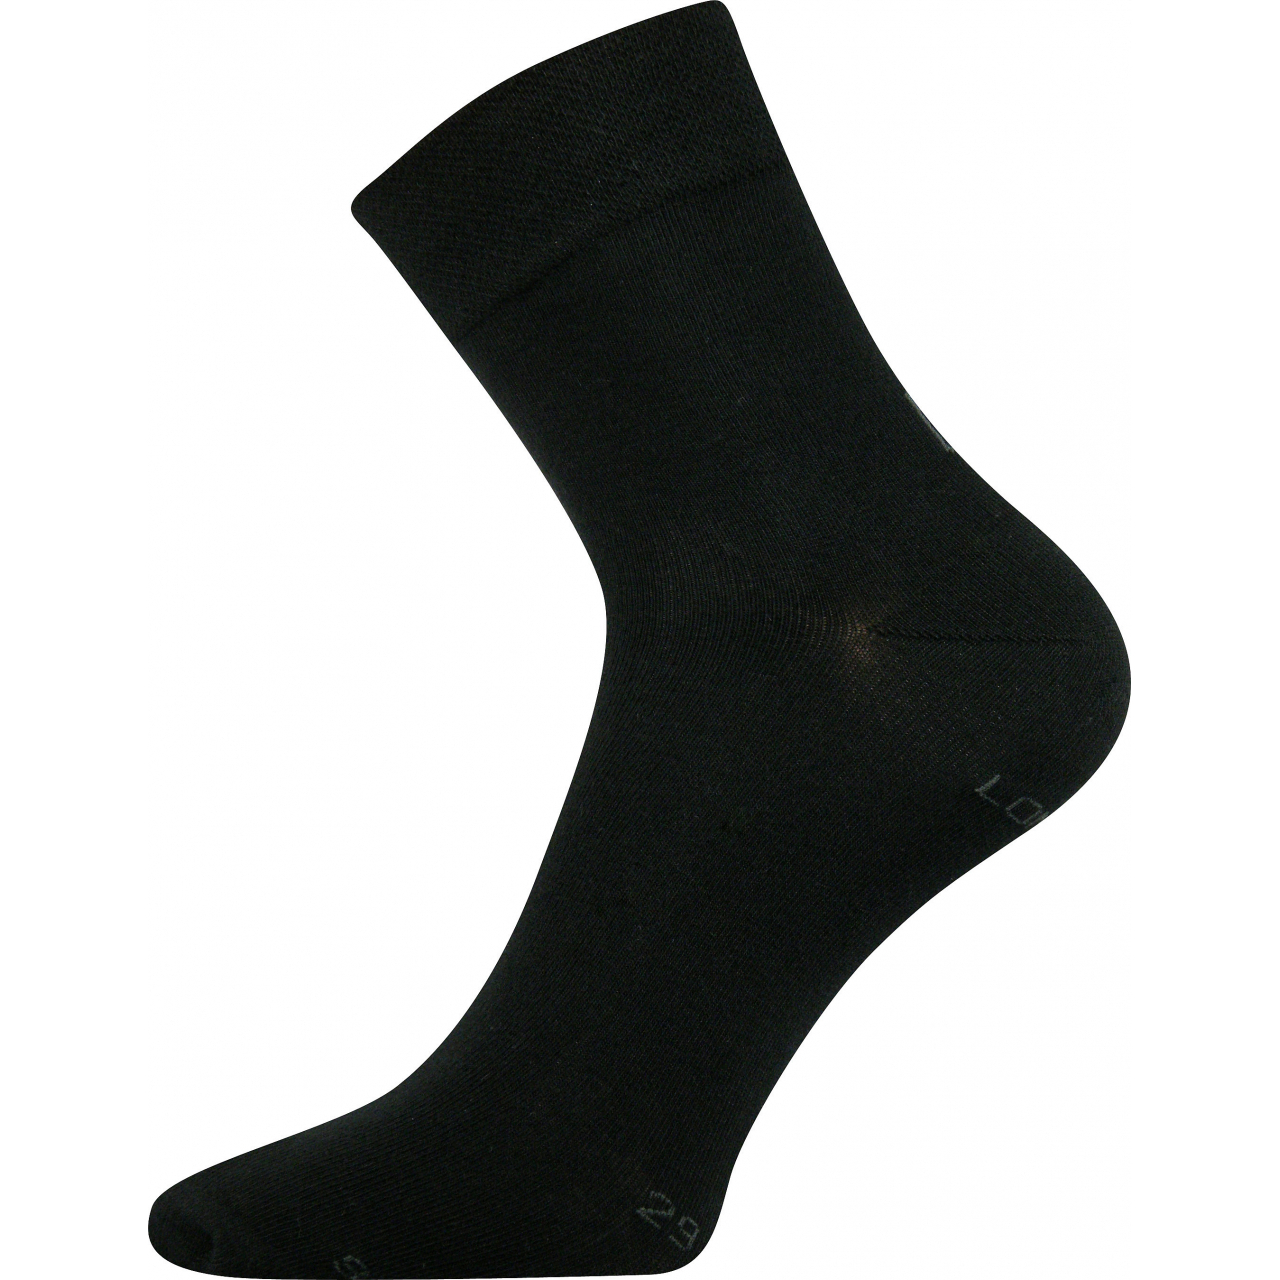 Ponožky dámské Lonka Fanera - černé, 35-38